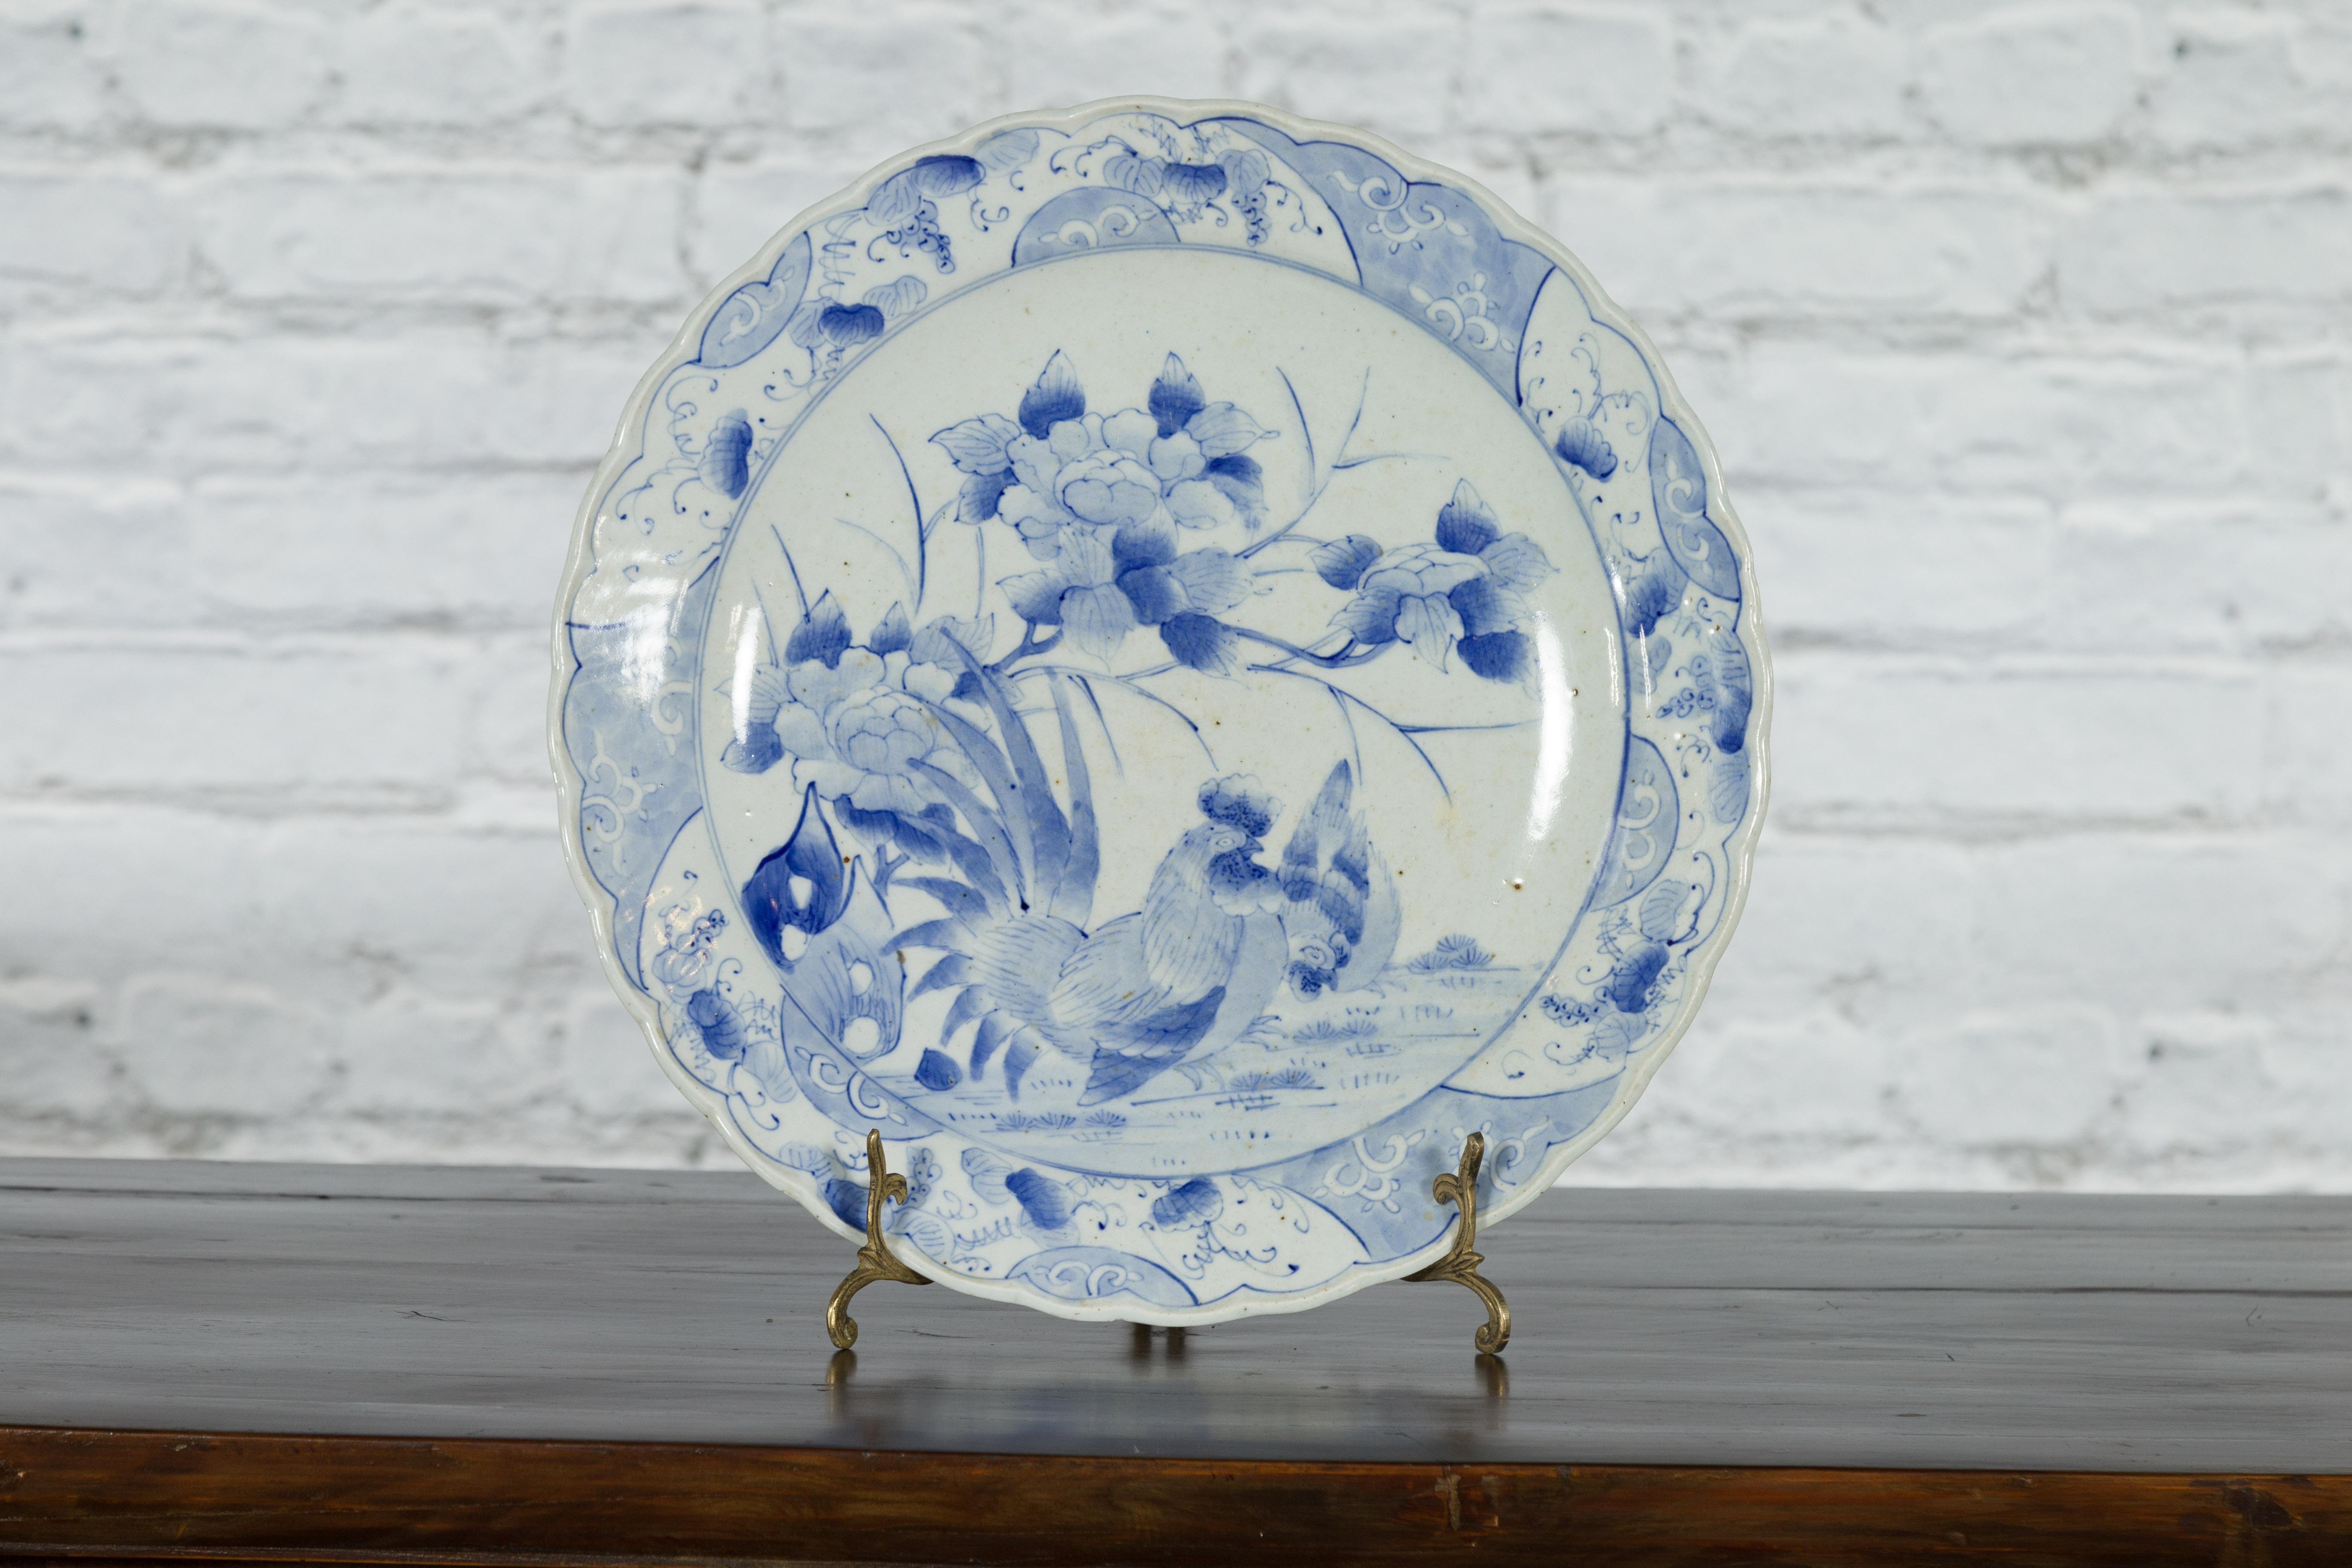 Japanischer Porzellanteller aus dem 19. Jahrhundert mit handgemaltem blau-weißem Blumendekor und einem Hahn und einer Henne. Dieser Porzellanteller wurde im 19. Jahrhundert in Japan hergestellt und zeigt ein zartes blau-weißes Dekor, das eine